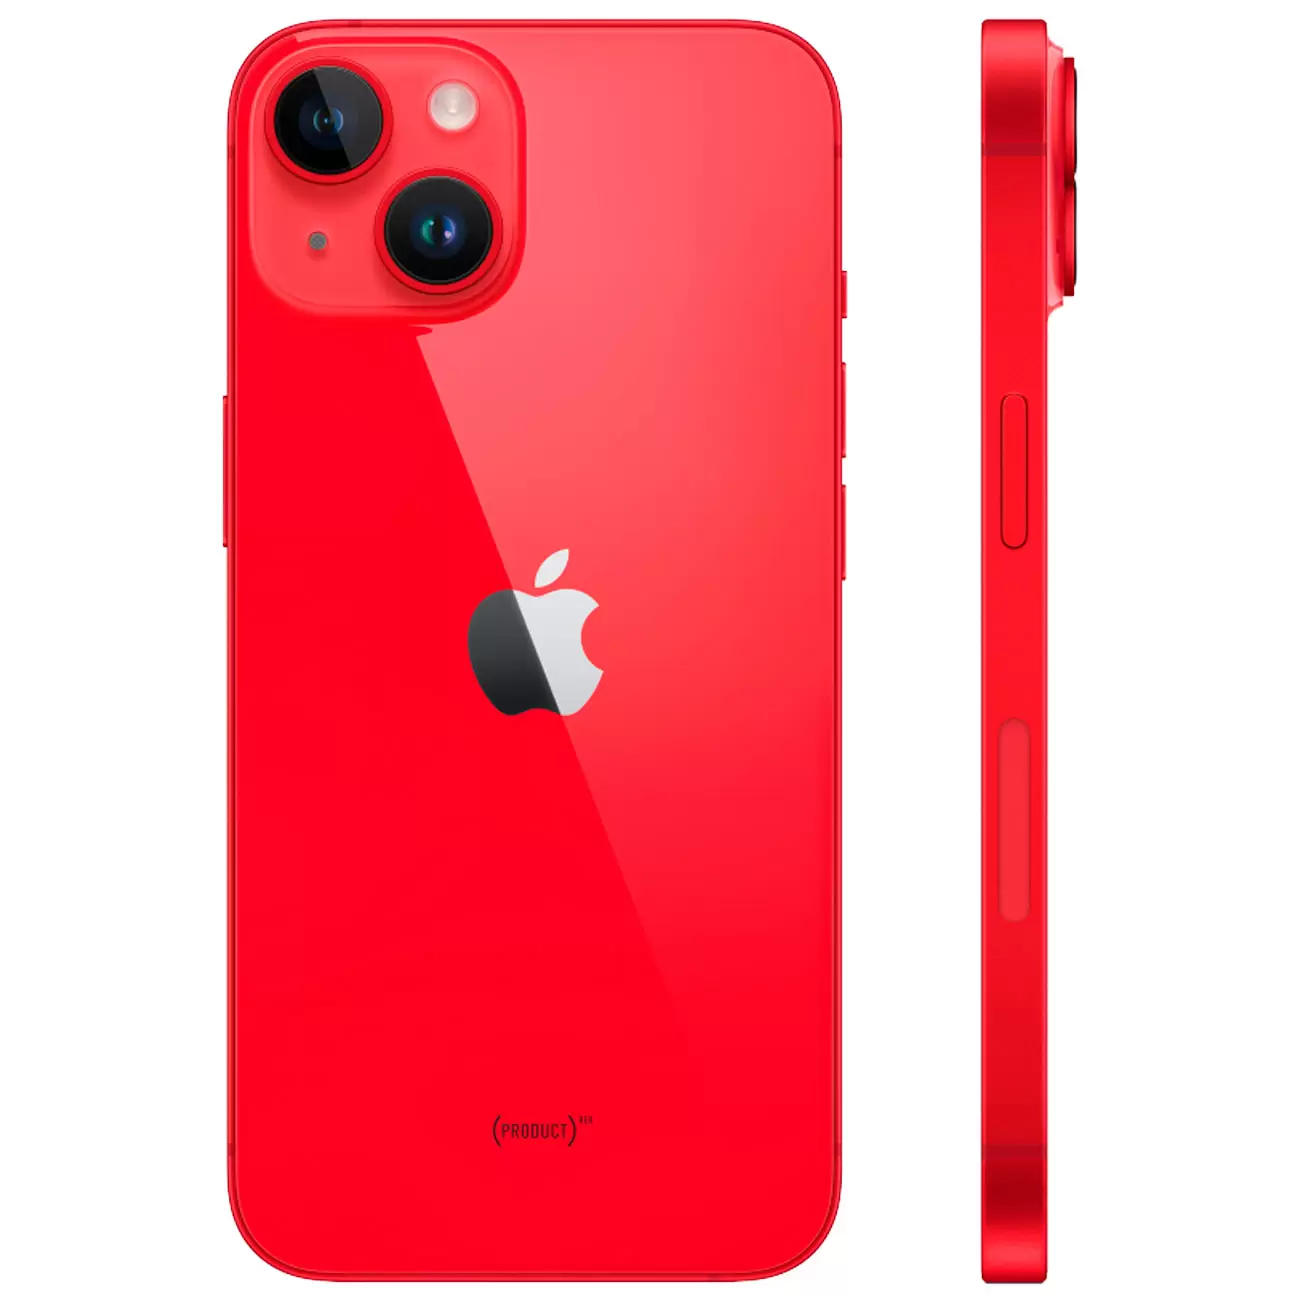 Купить смартфон apple iphone 14 128gb (product)red Apple iPhone 14 в официальном магазине Apple, Samsung, Xiaomi. iPixel.ru Купить, заказ, кредит, рассрочка, отзывы,  характеристики, цена,  фотографии, в подарок.